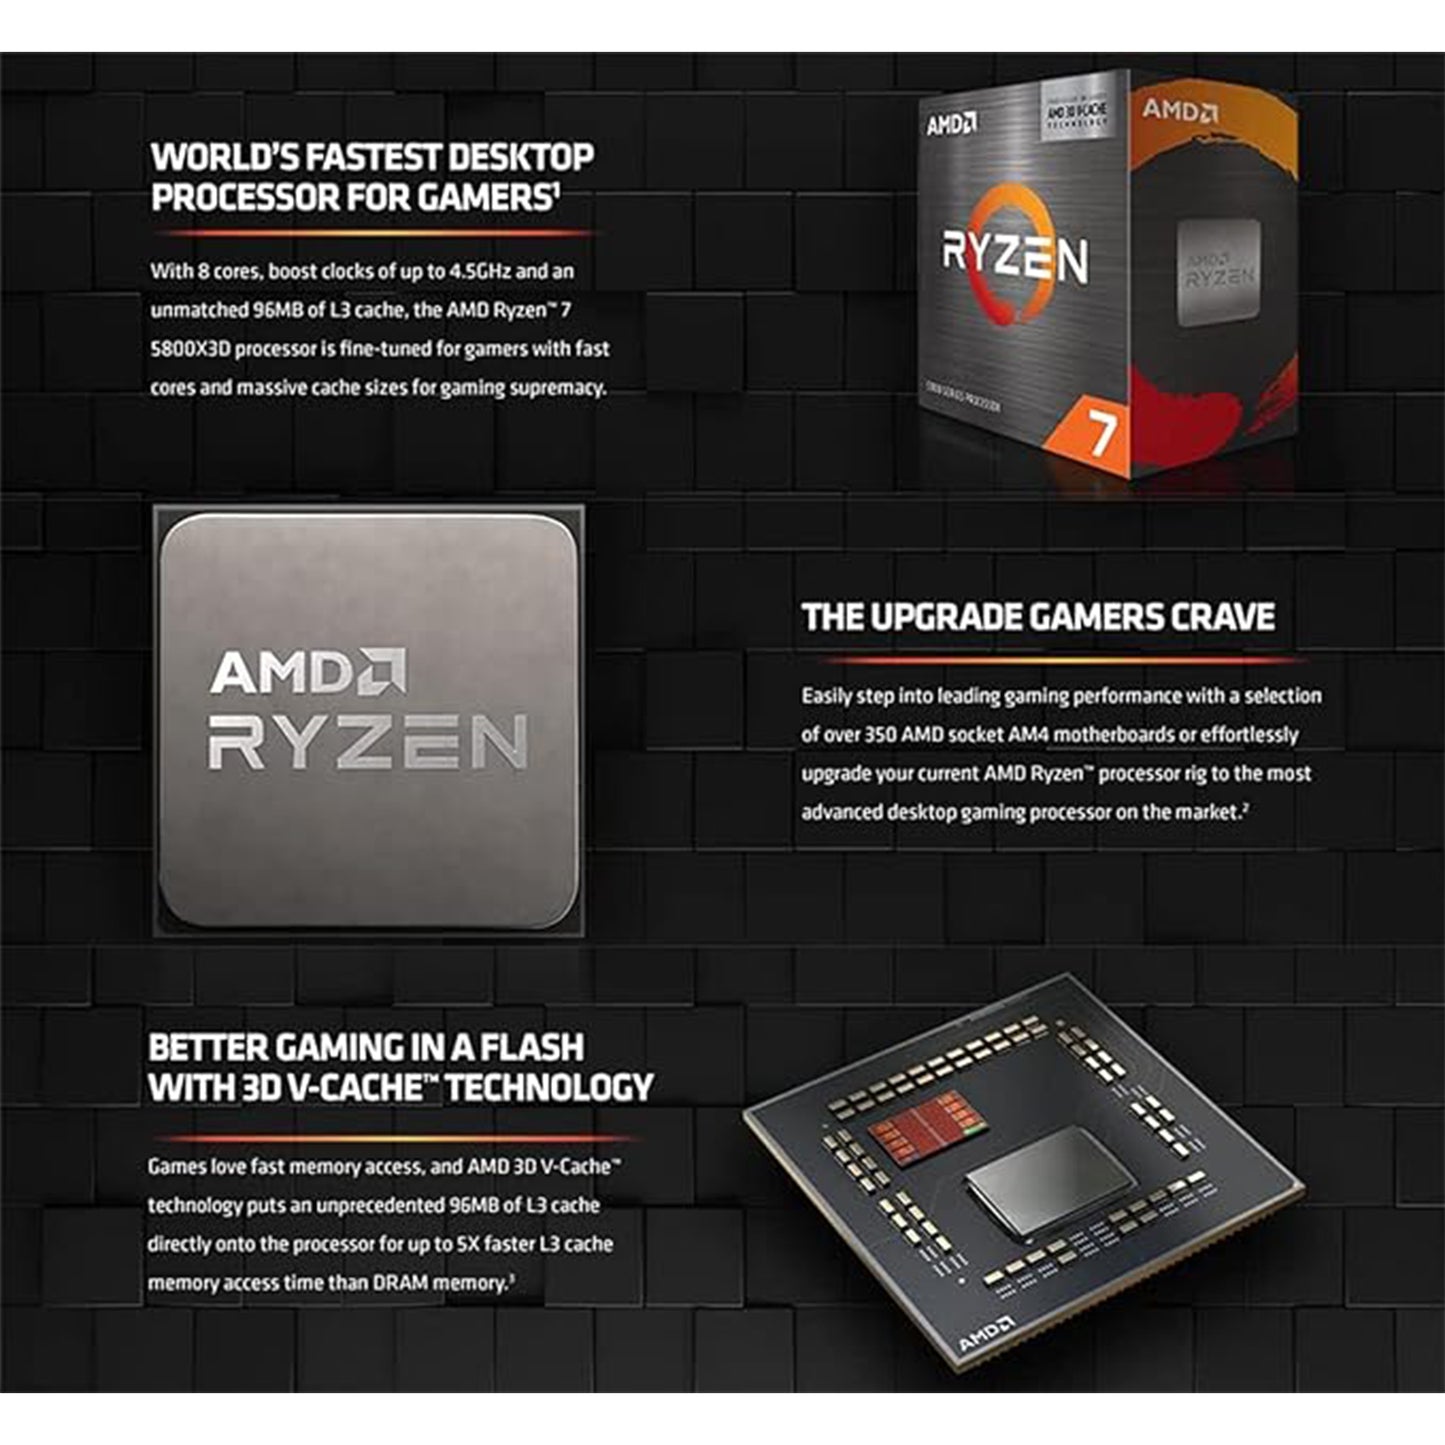 معالج سطح المكتب Micro Center AMD Ryzen 7 5800X3D ثماني النواة و16 خيط مع حزمة تقنية AMD 3D V-Cache مع اللوحة الأم ASUS Prime B550-PLUS AM4 DDR4 ATX 